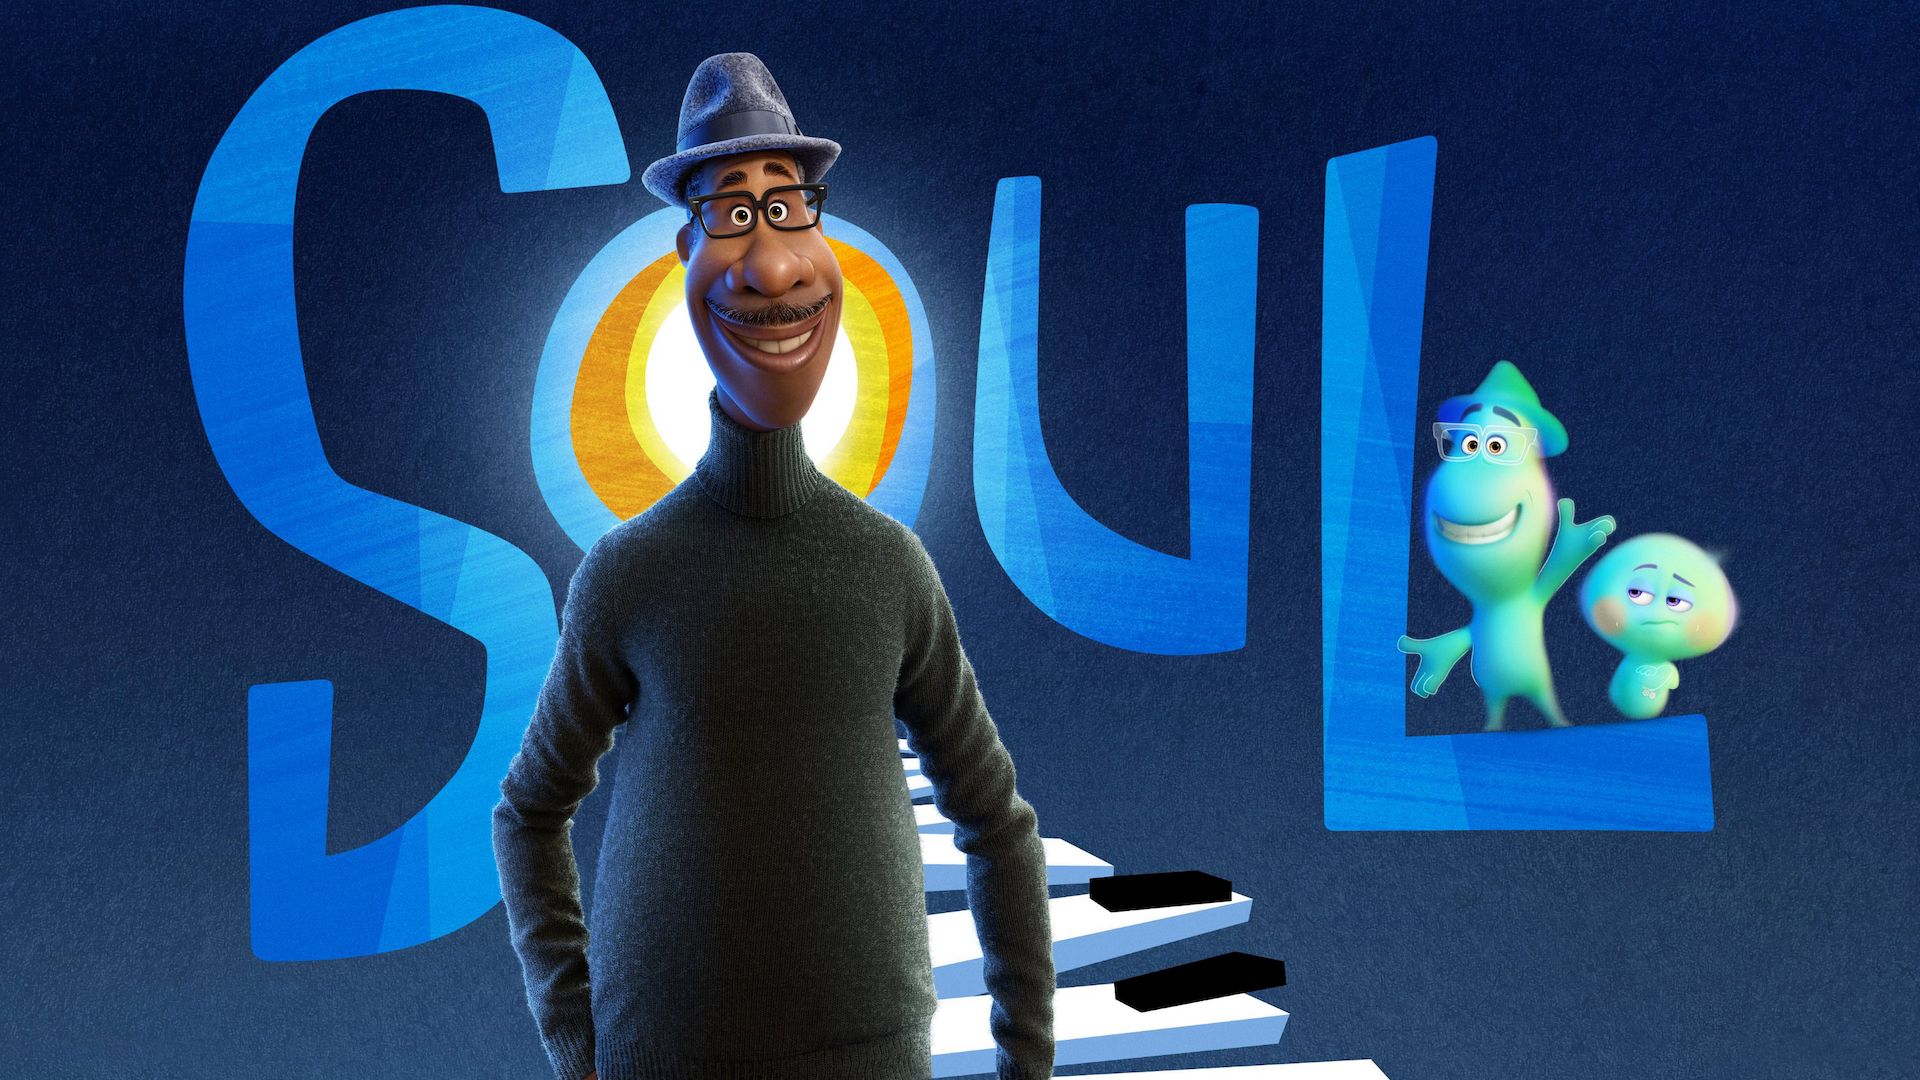 Em primeiro plano está o protagonista, Joe Gardner, em sua forma humana. Ele é negro, usa óculos, um chapéu, um casaco preto e sorri olhando para frente. Ao fundo, há uma escadaria feita com teclas de piano, levando ao letreiro do filme “Soul”, com a representação astral de Joe acenando ao lado de 22, em cima da letra “L”. O fundo da imagem é azul marinho.